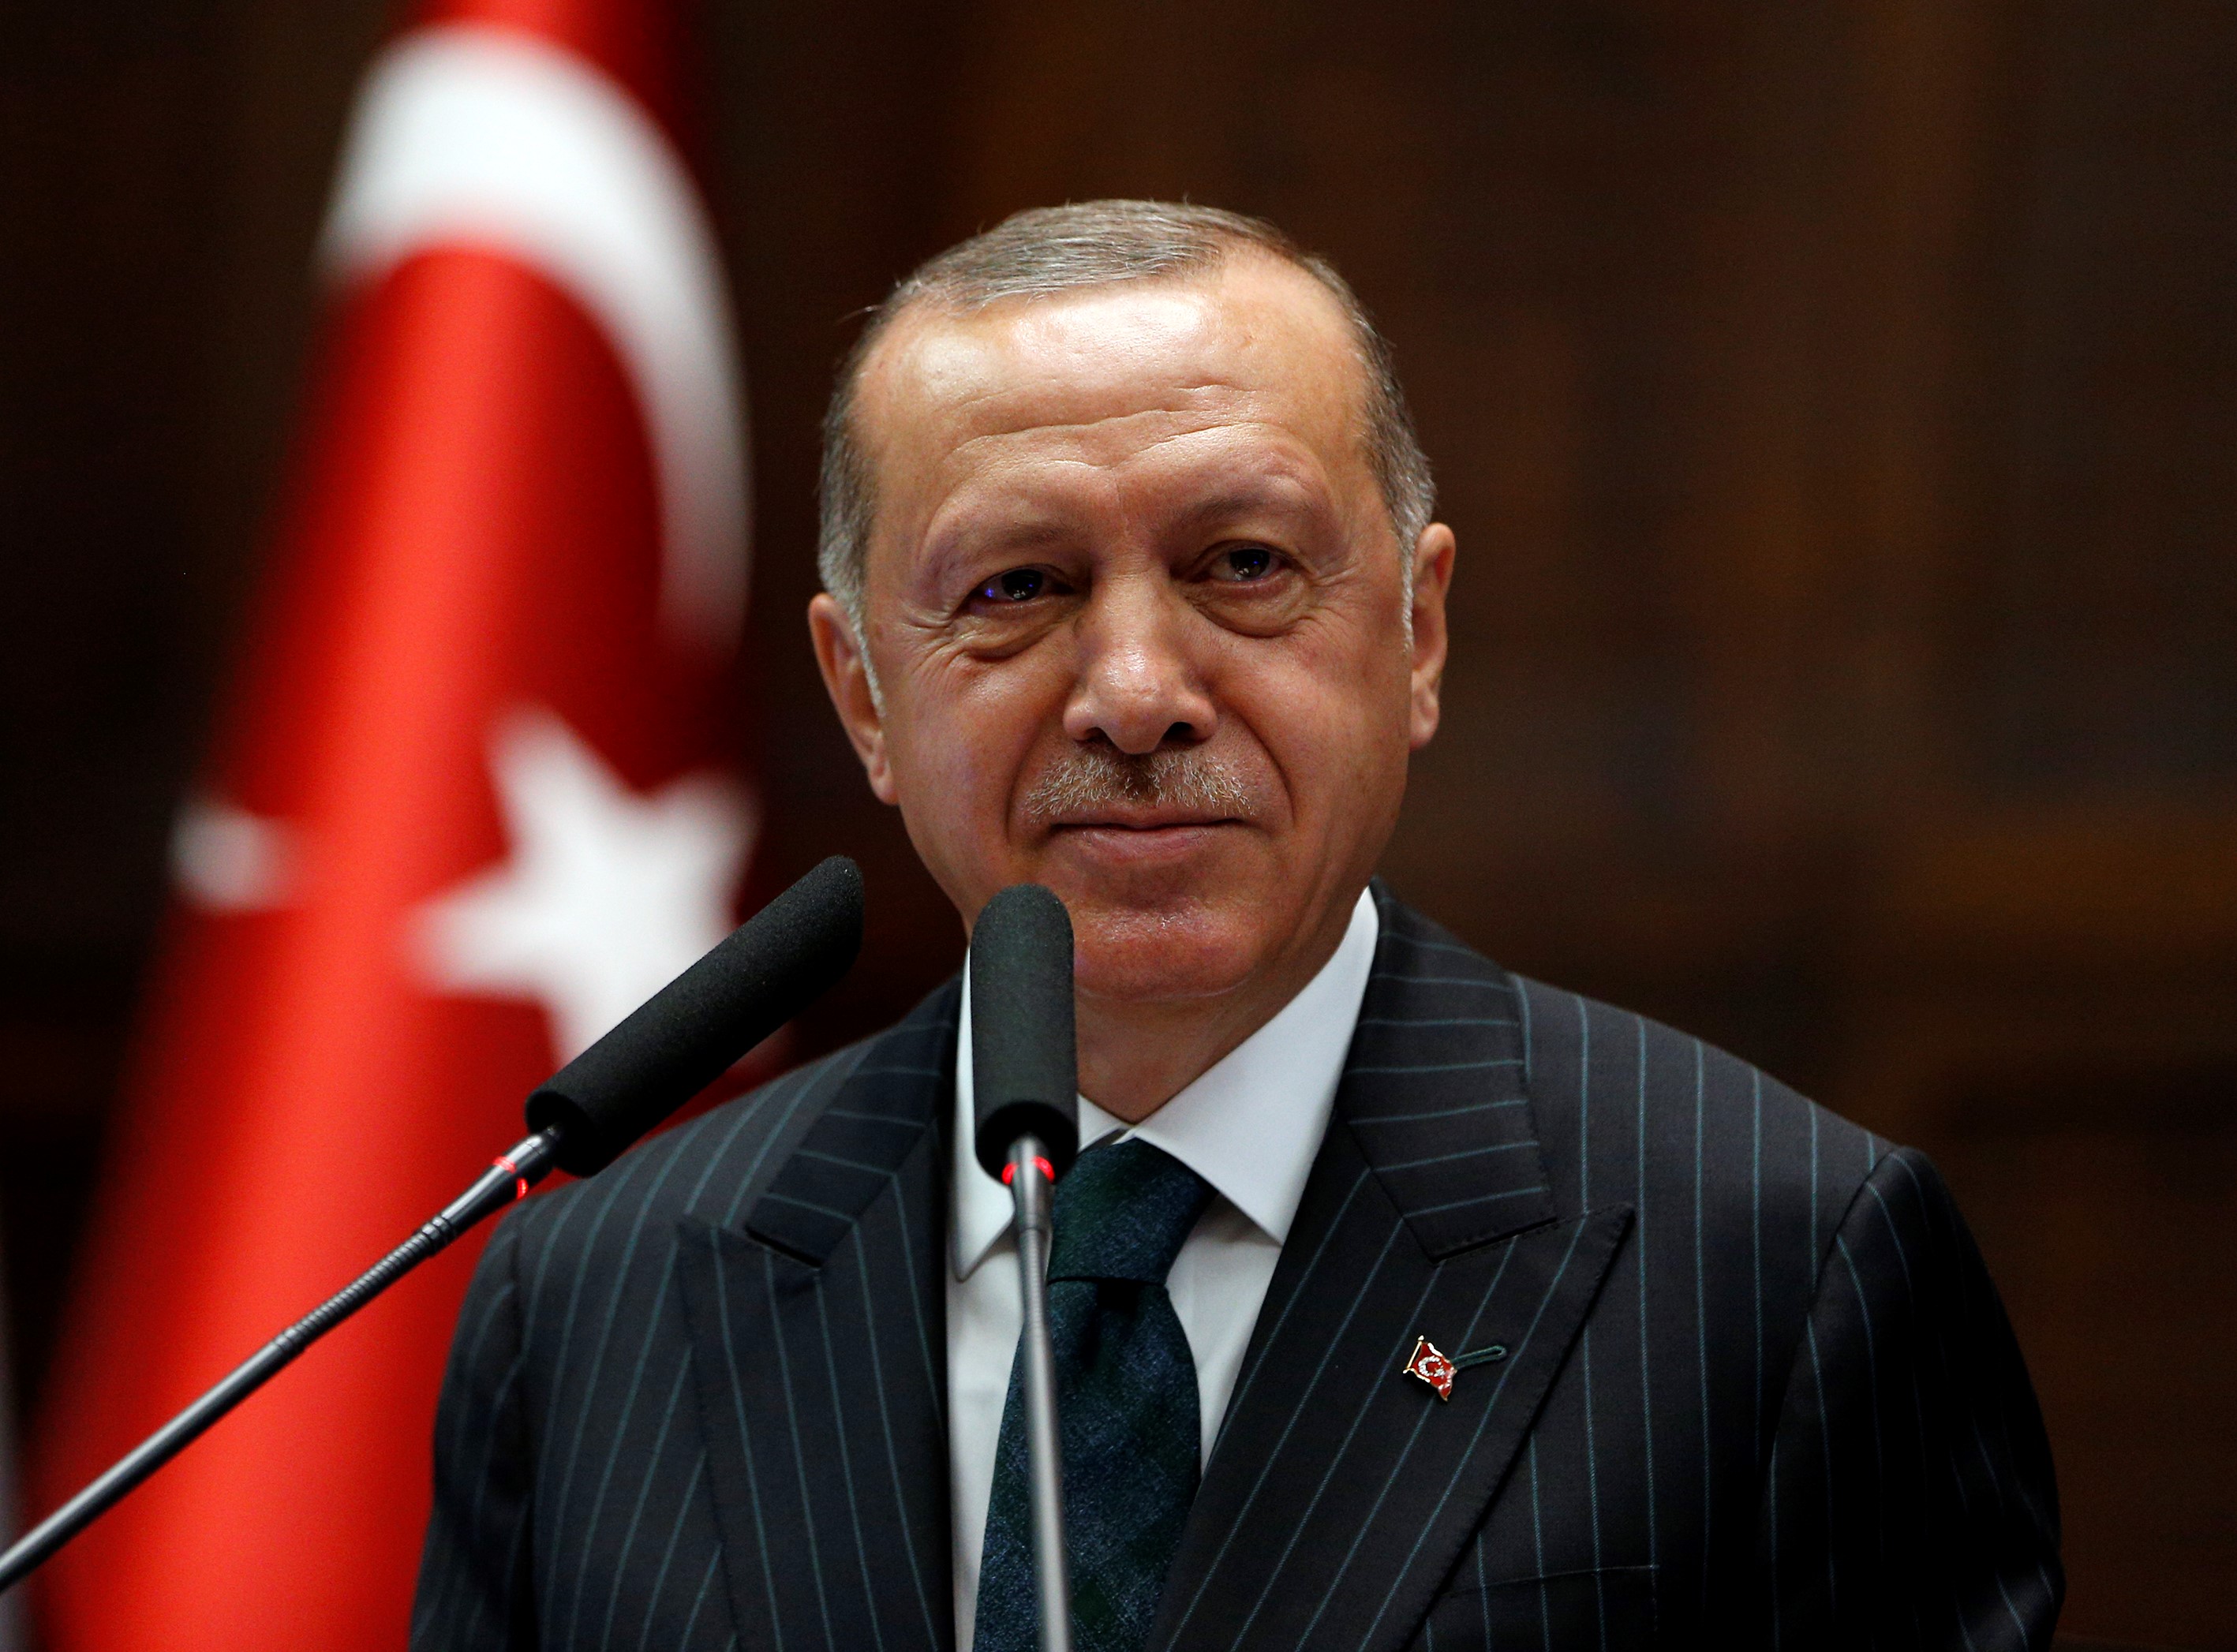 Erdogan nemkívánatos személynek nyilvánított 10 nyugati diplomatát, mert bírálták a török igazságszolgáltatást